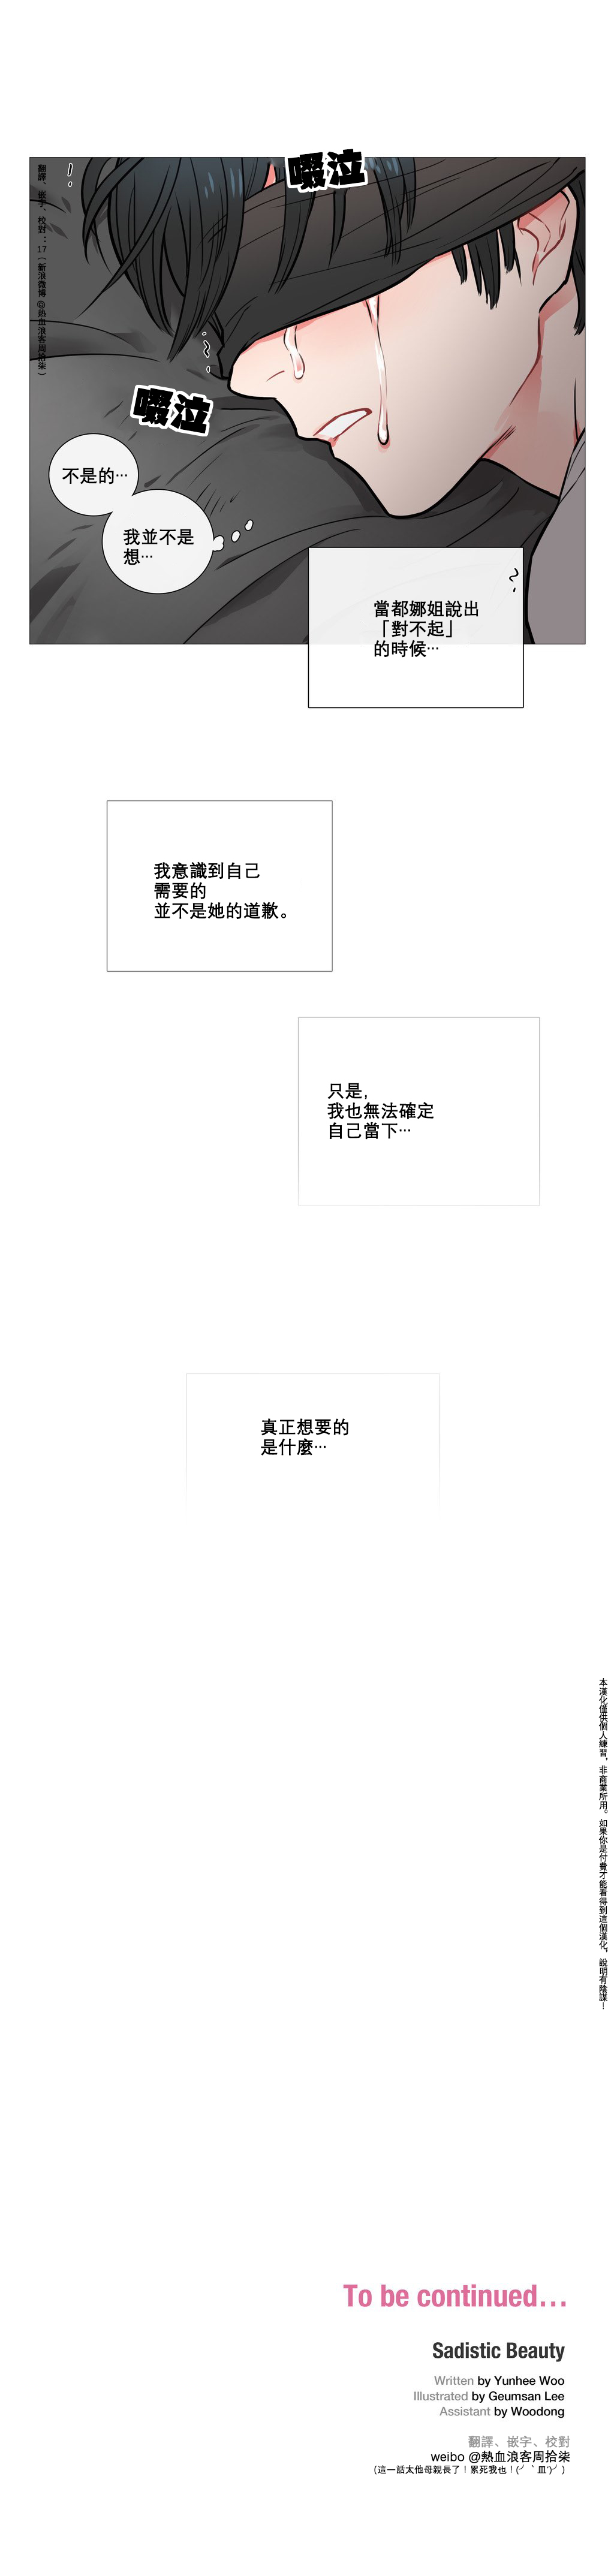 【神山】サディスティックビューティーCh.1-18【中国語】【17汉化】